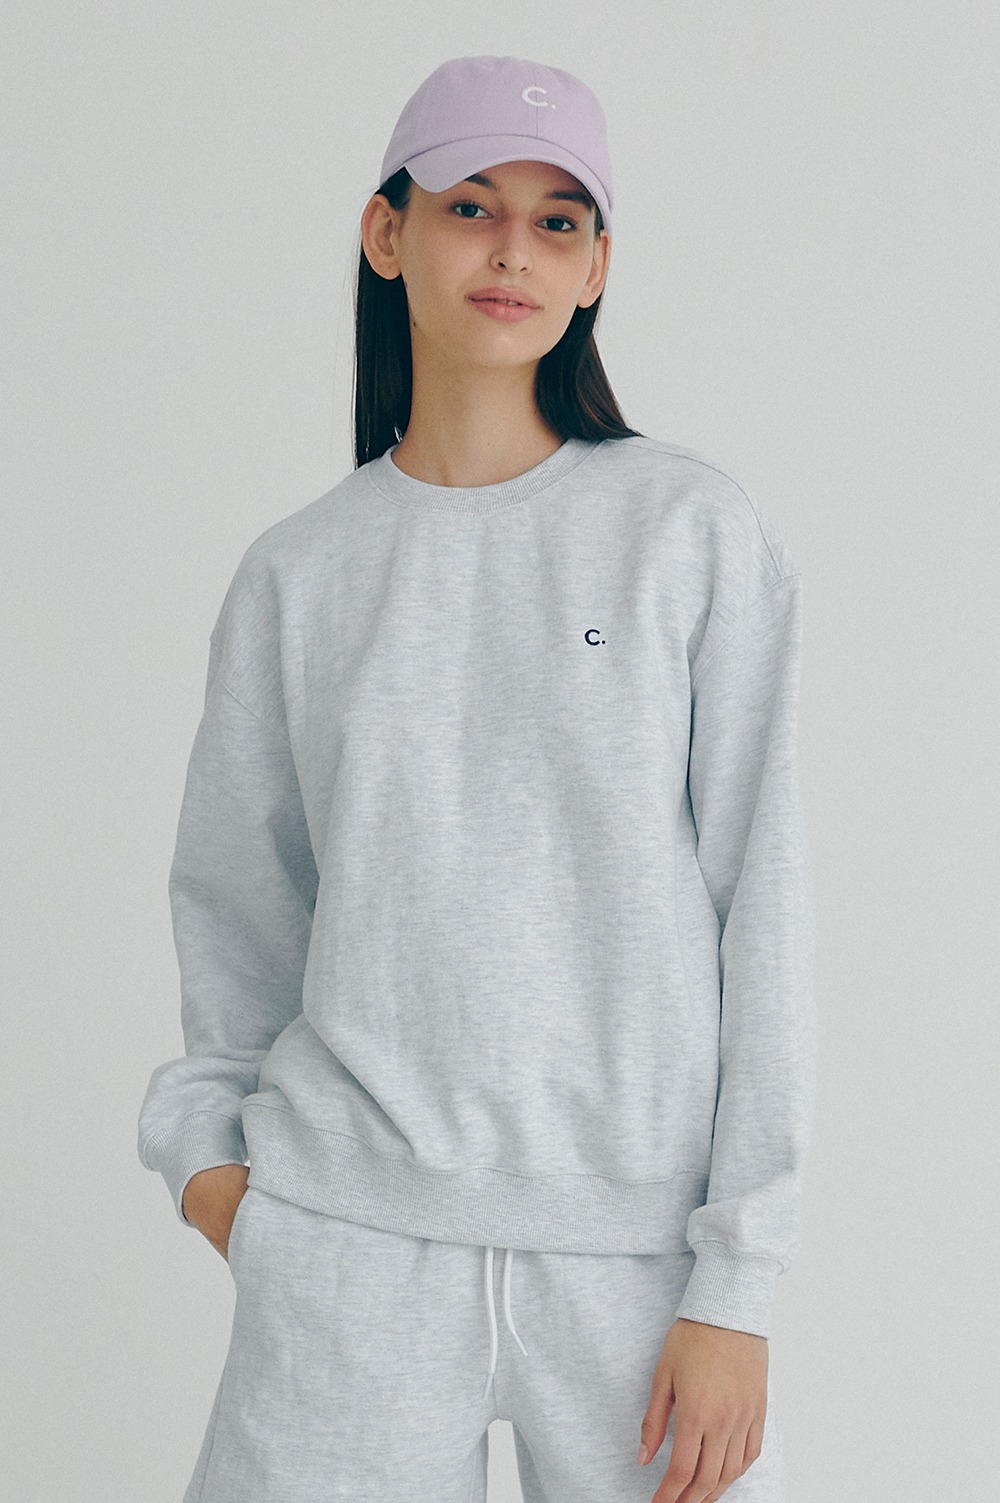 clove - Active Sweatshirt_Women (Light Grey)